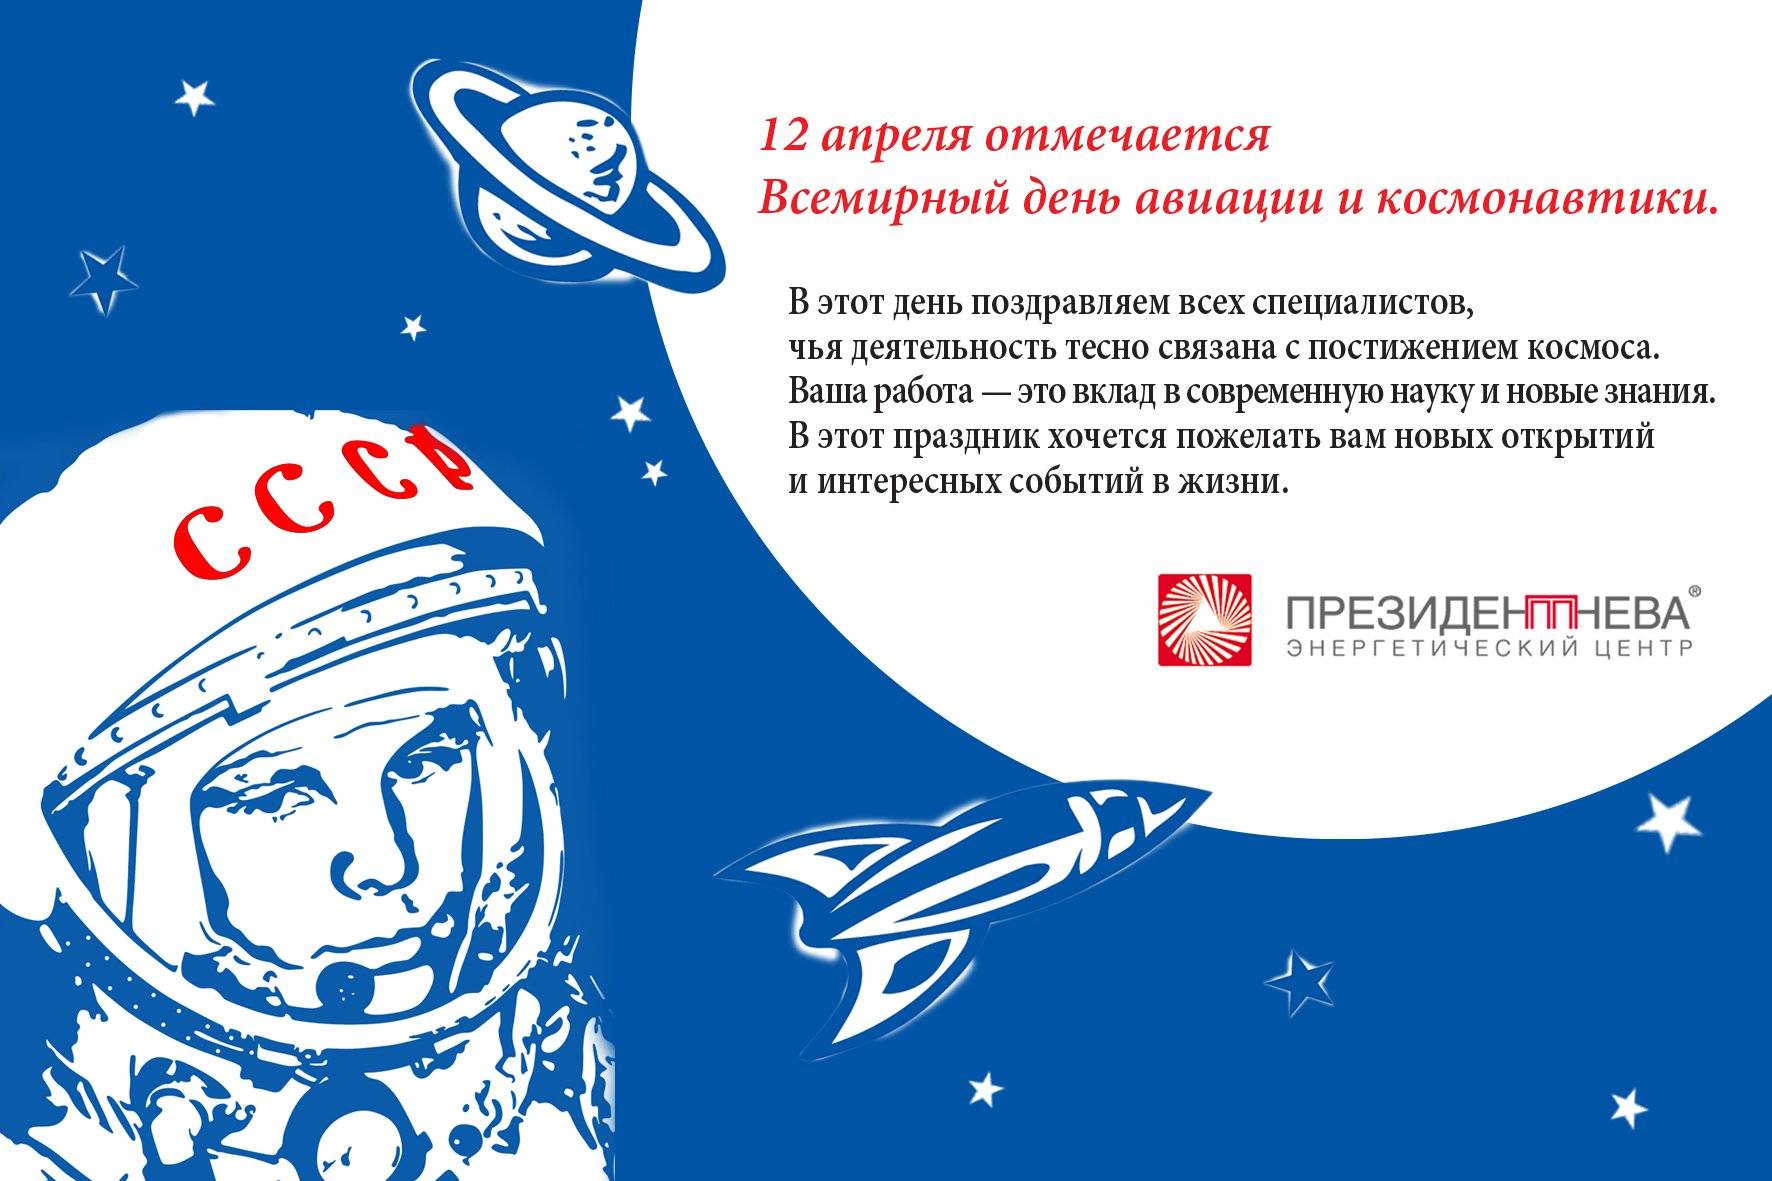 Поделки ко дню космонавтики 2023. подборка идей на 12 апреля для детского сада и школы